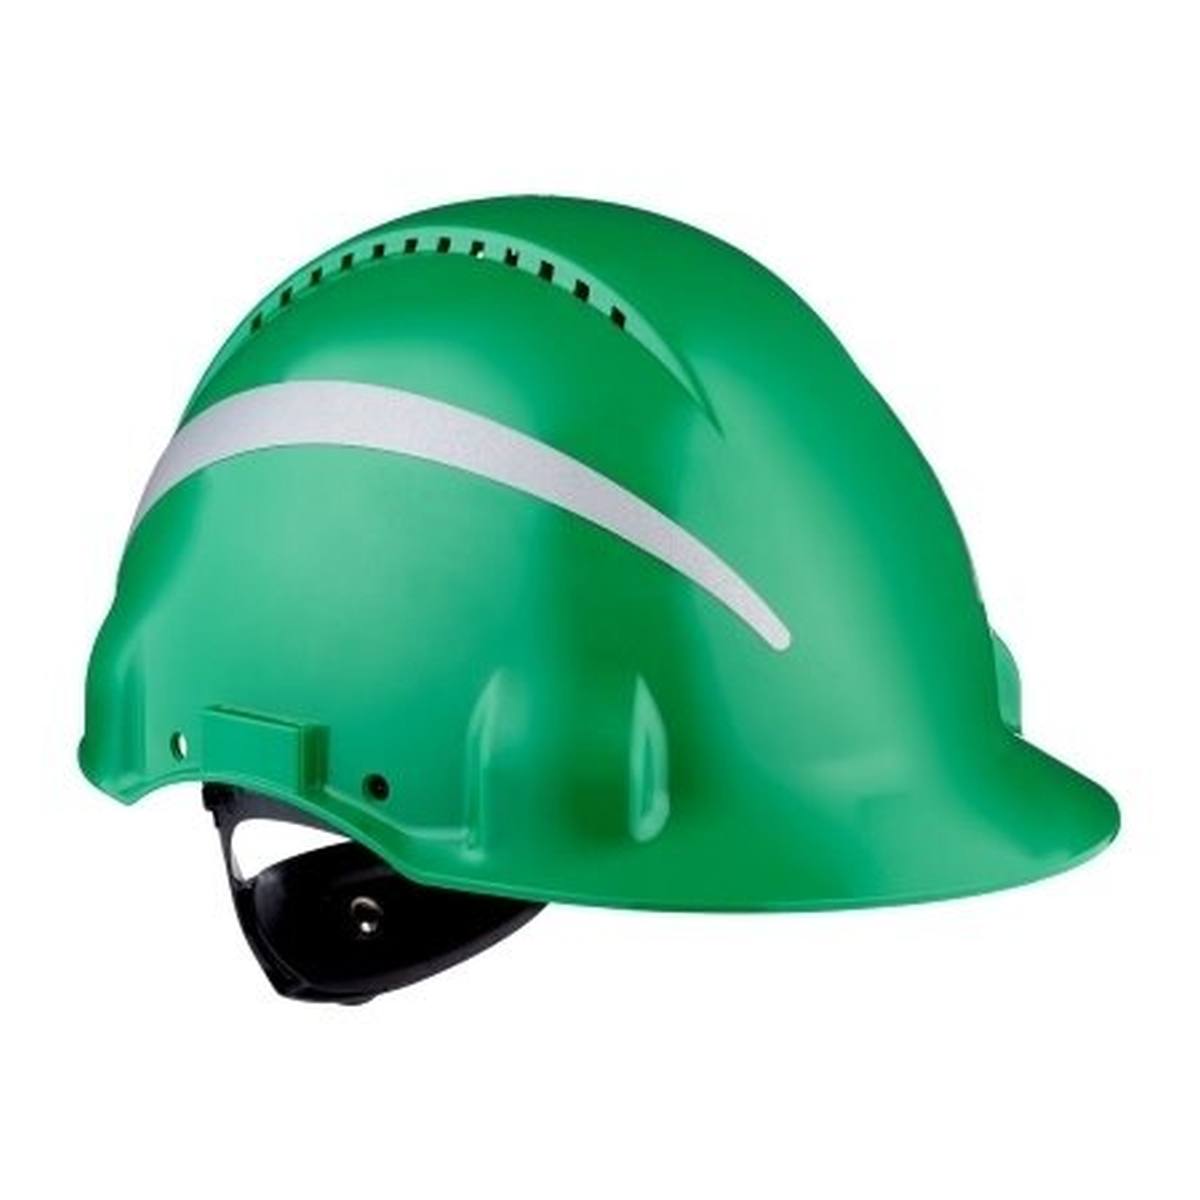 elmetto di sicurezza 3M G3000 con indicatore UV, verde, ABS, chiusura a cricchetto ventilata, fascia antisudore in plastica, adesivo riflettente